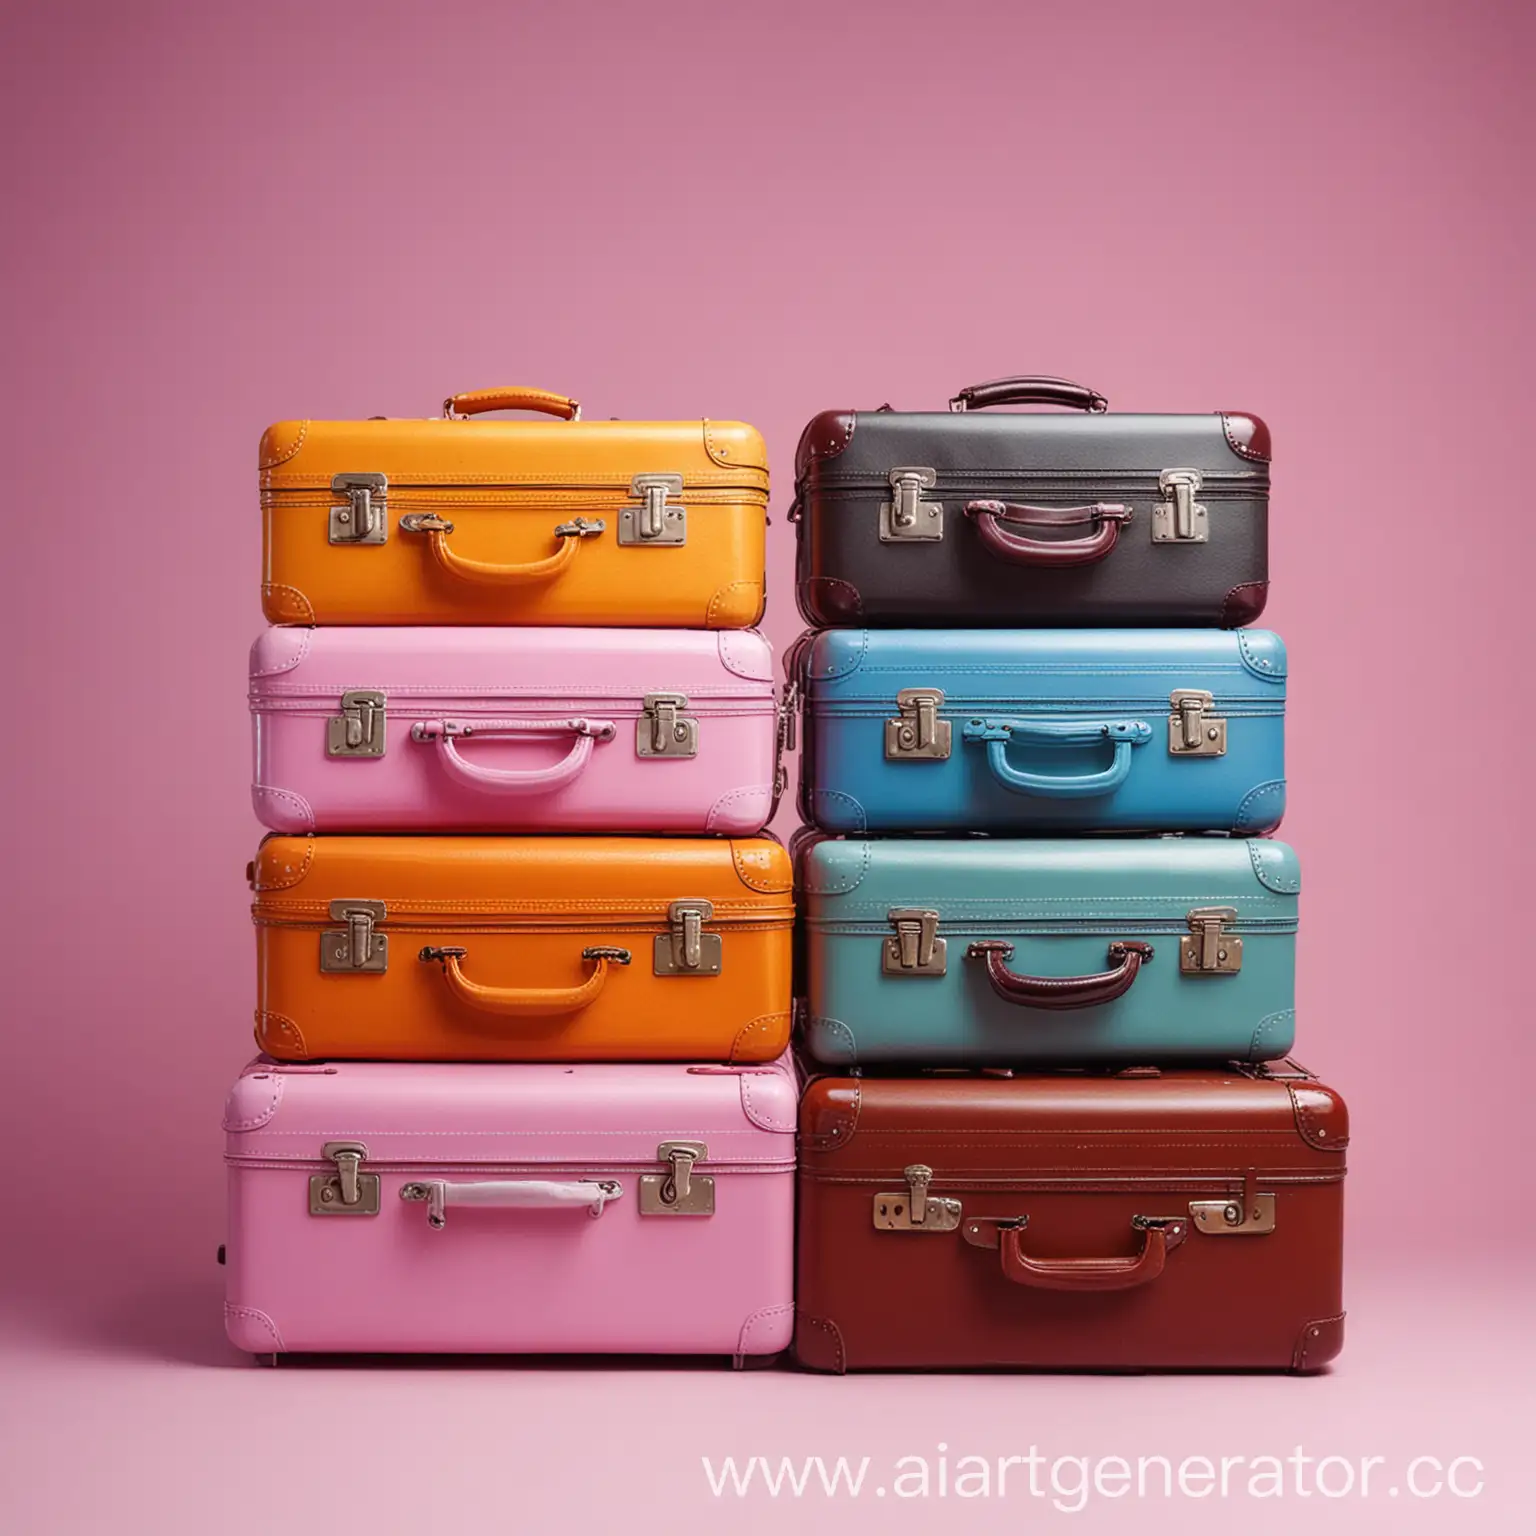 Разные чемоданы, цветные, яркий фон